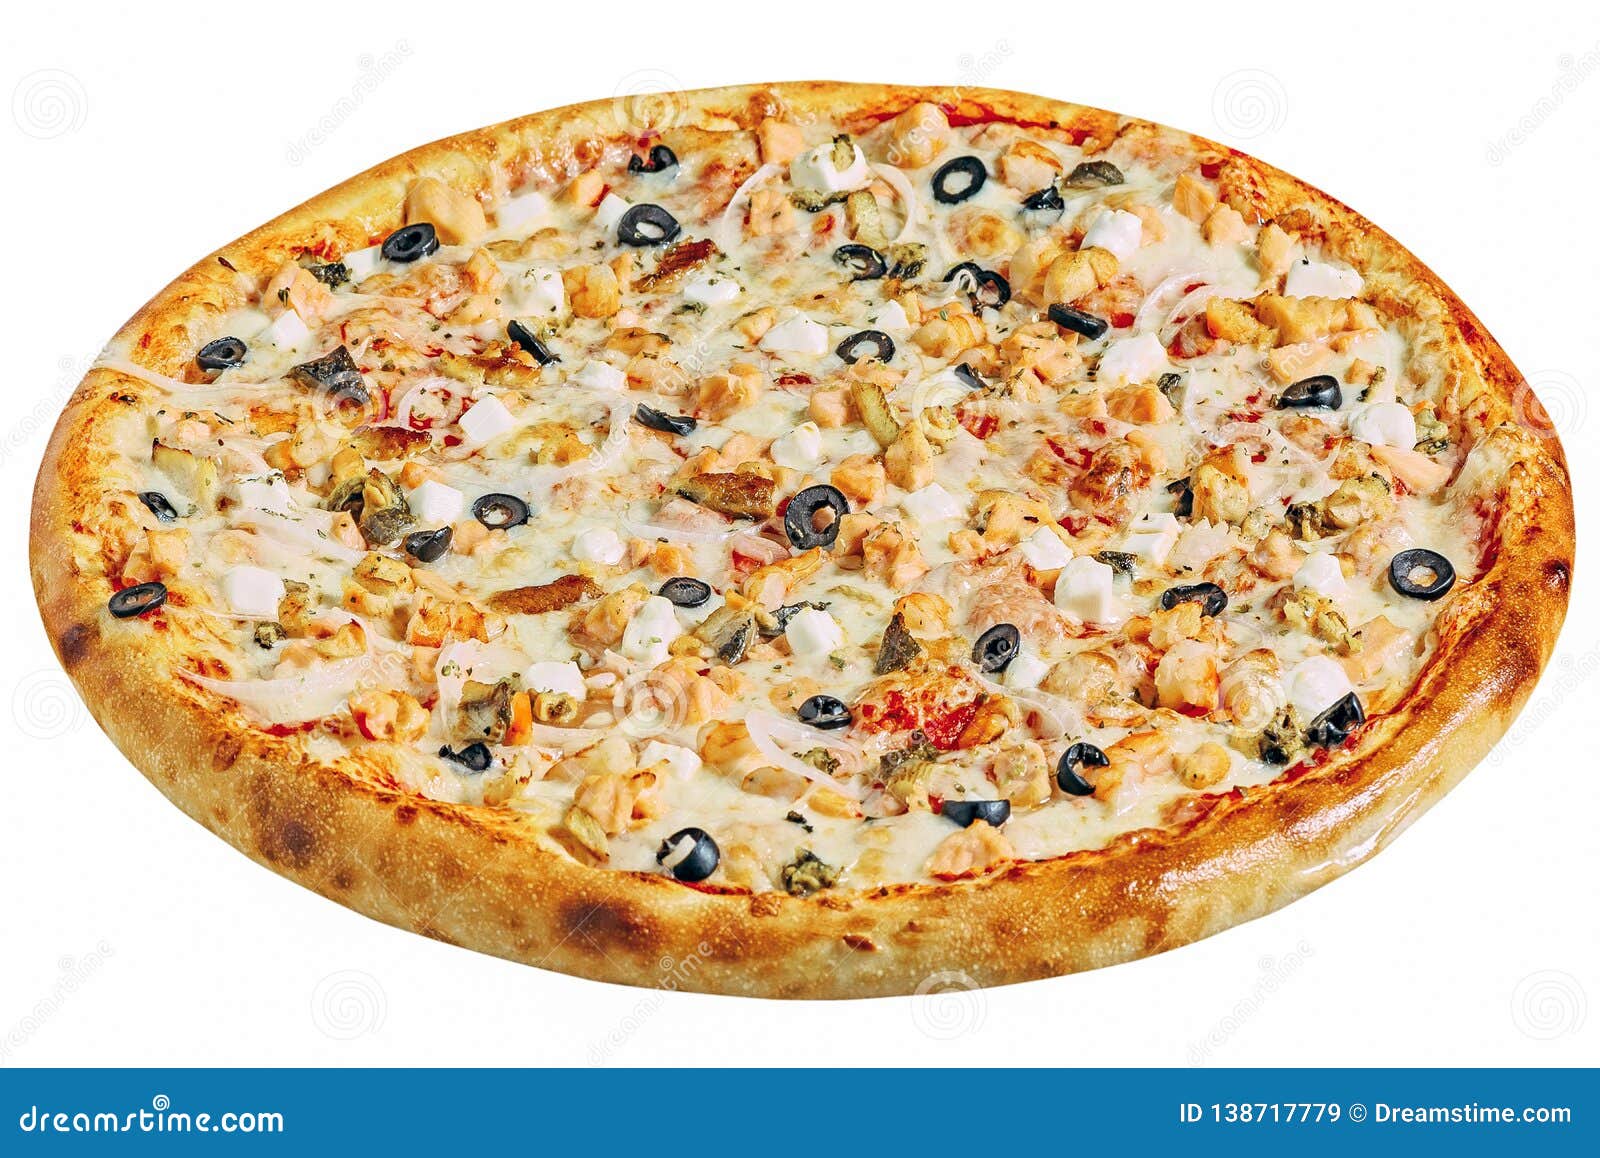 что такое пицца маринара рецепт фото 48